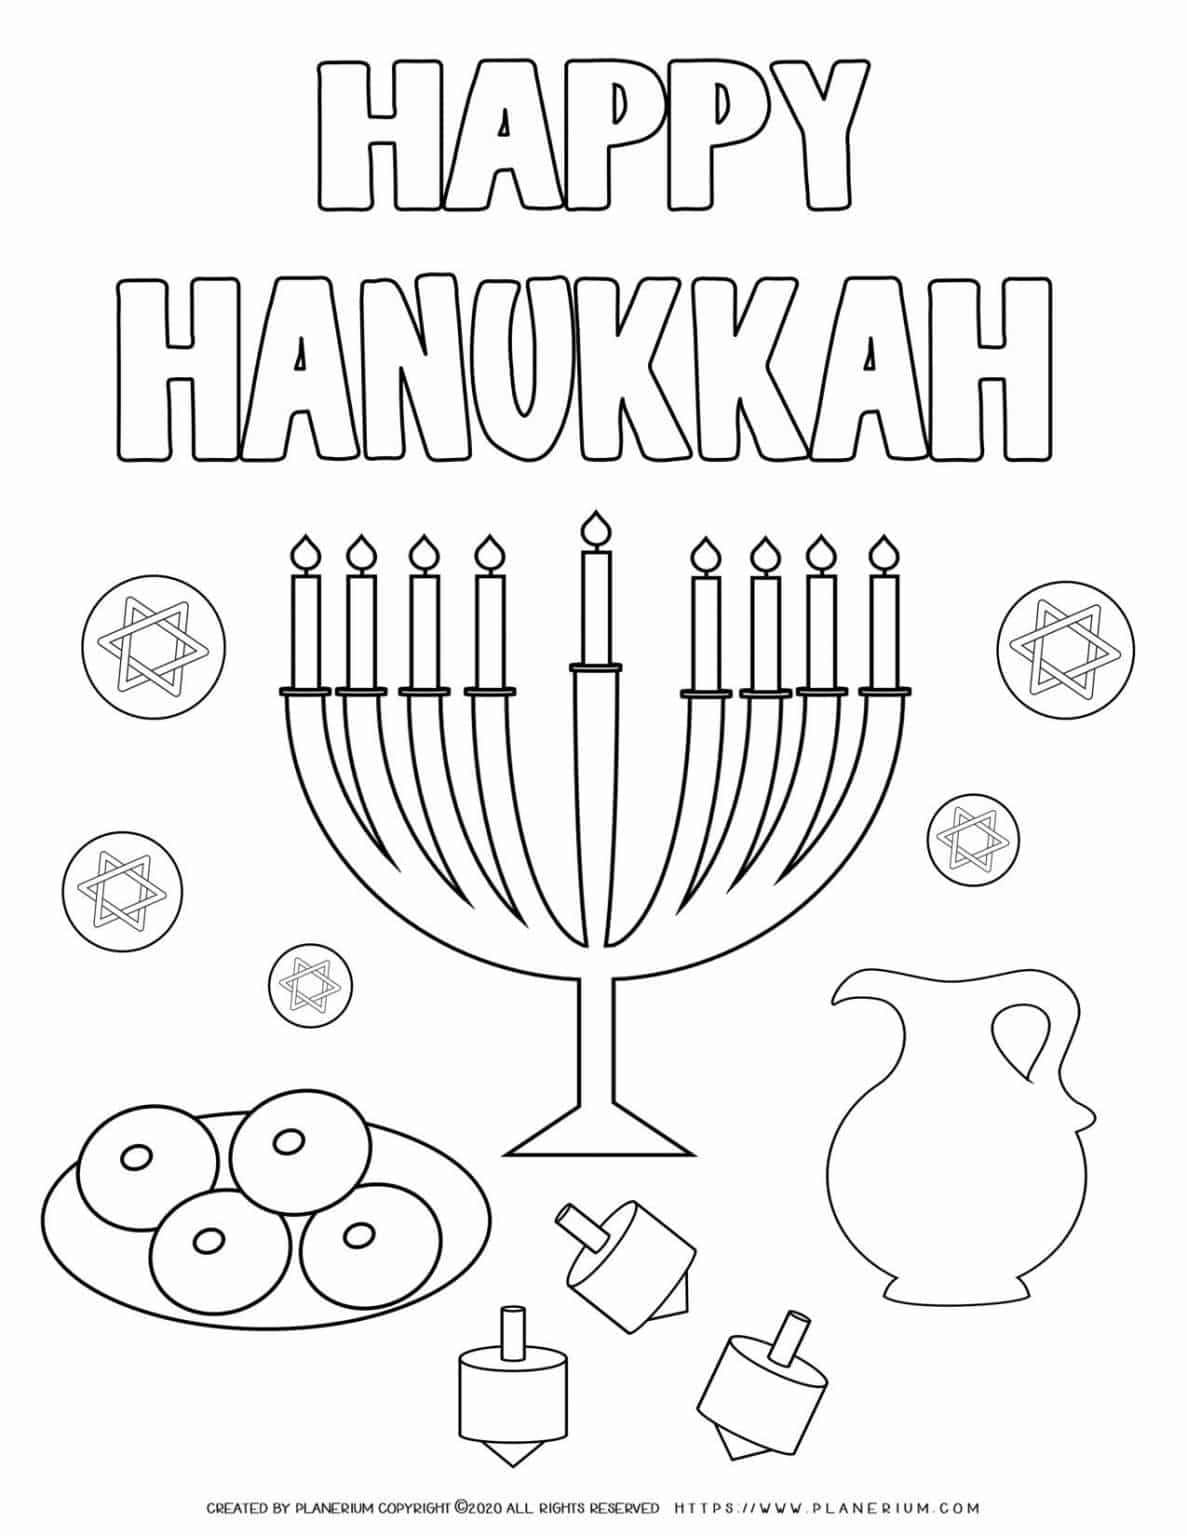 Happy Hanukkah - Coloring page - Free Printable | Planerium